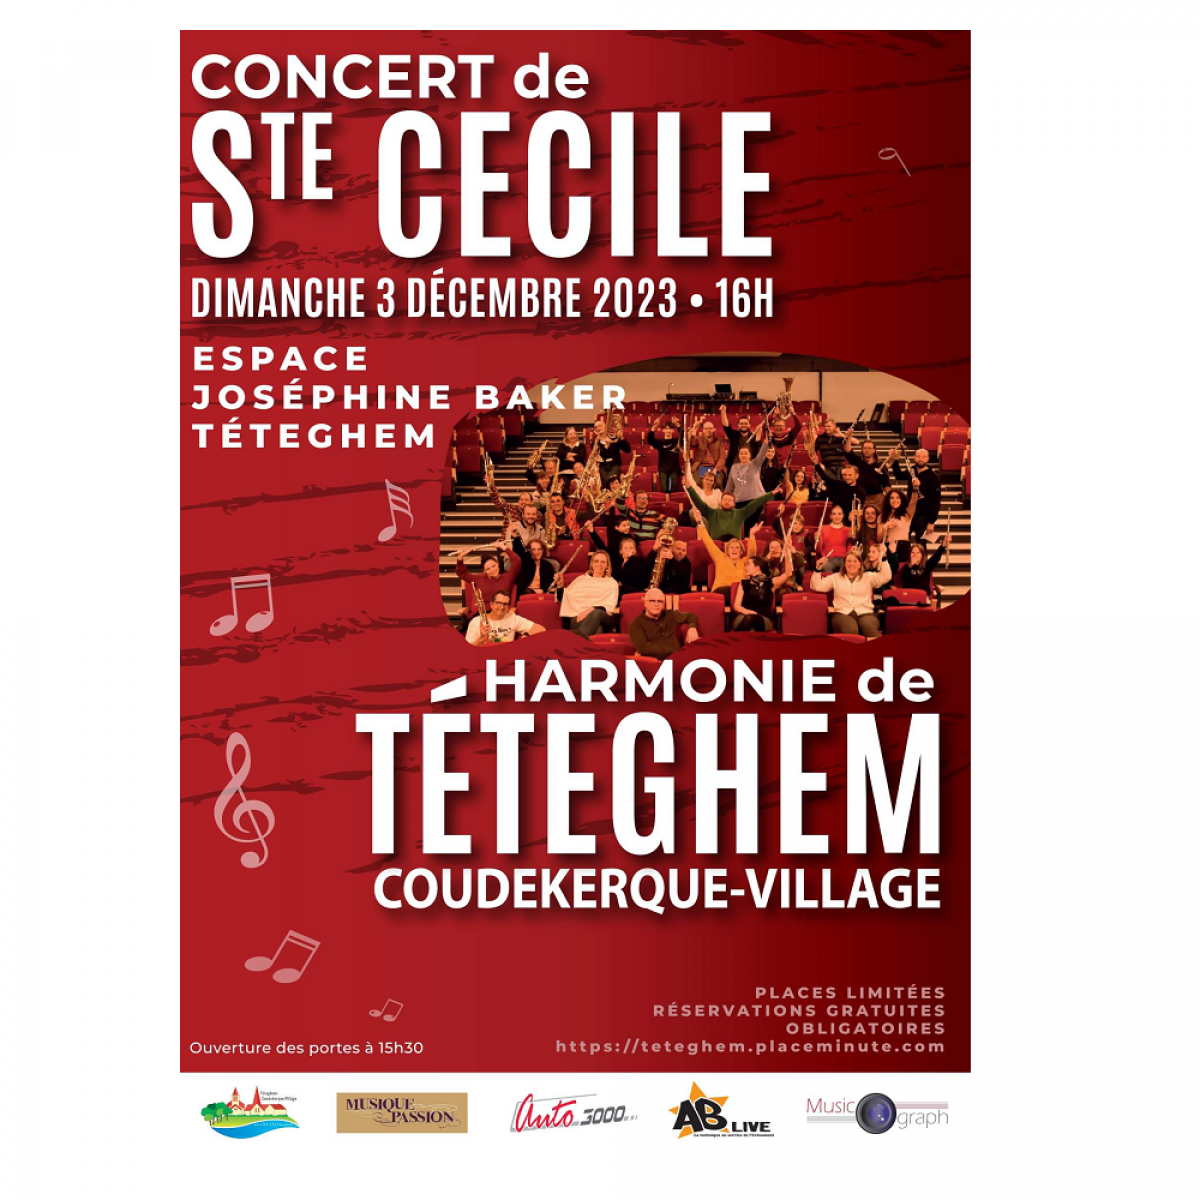 Concert de Sainte Cécile